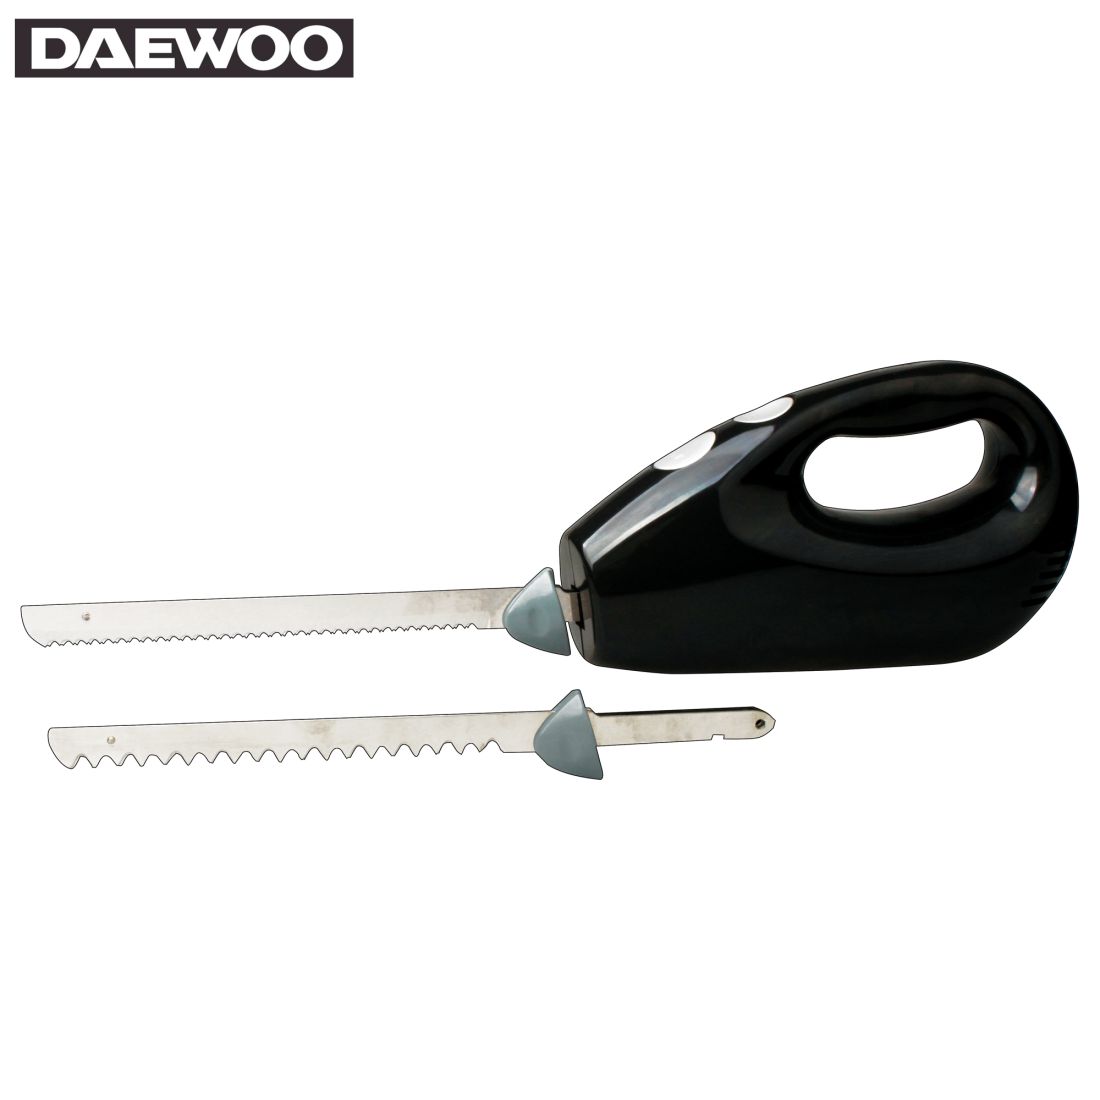 Daewoo SYM-1359: Electric Knife 3